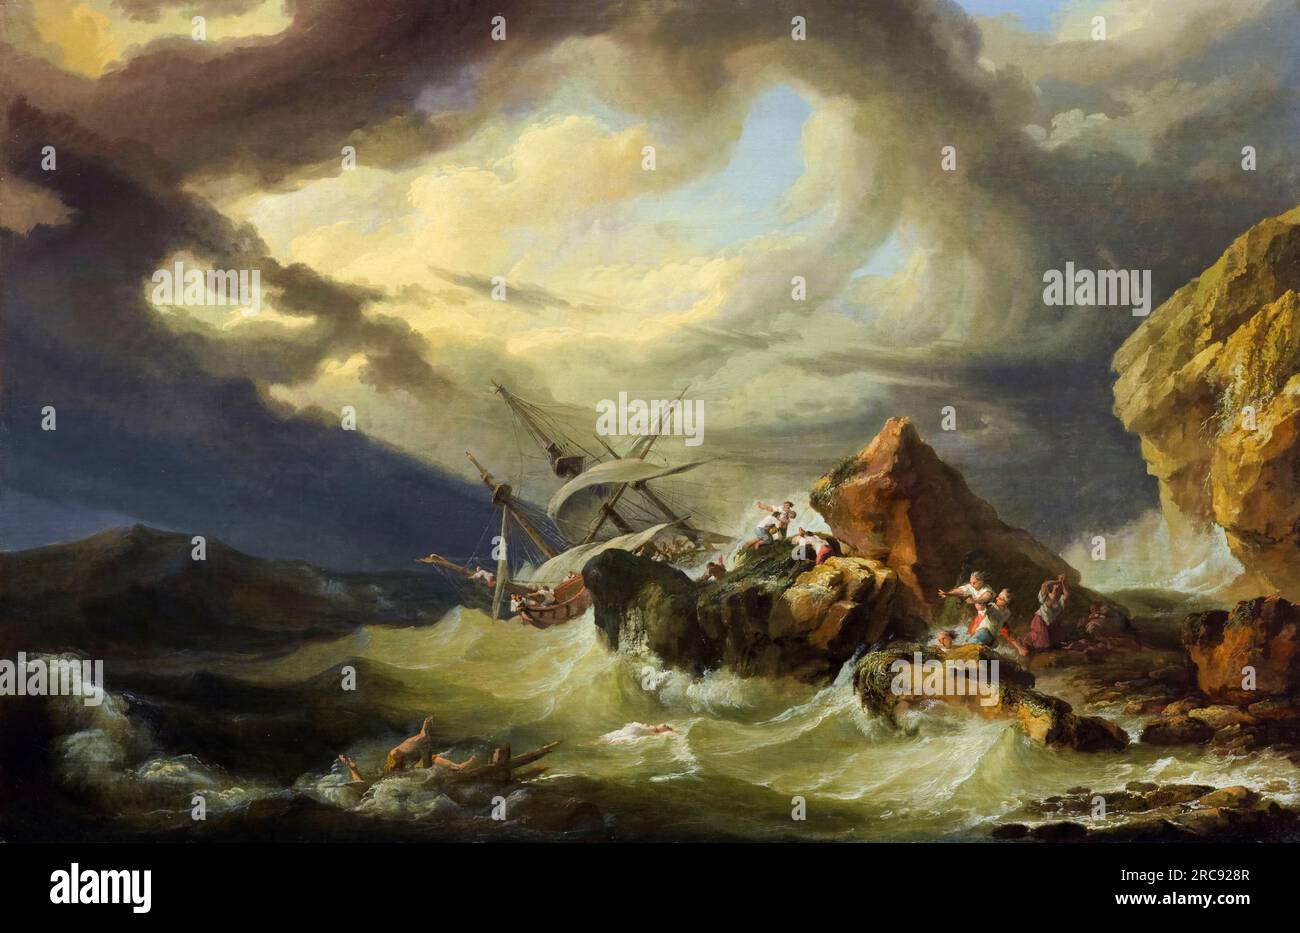 Philip James de Loutherbourg, naufrage au large d'une côte rocheuse, peinture à l'huile sur toile, 1760-1769 Banque D'Images